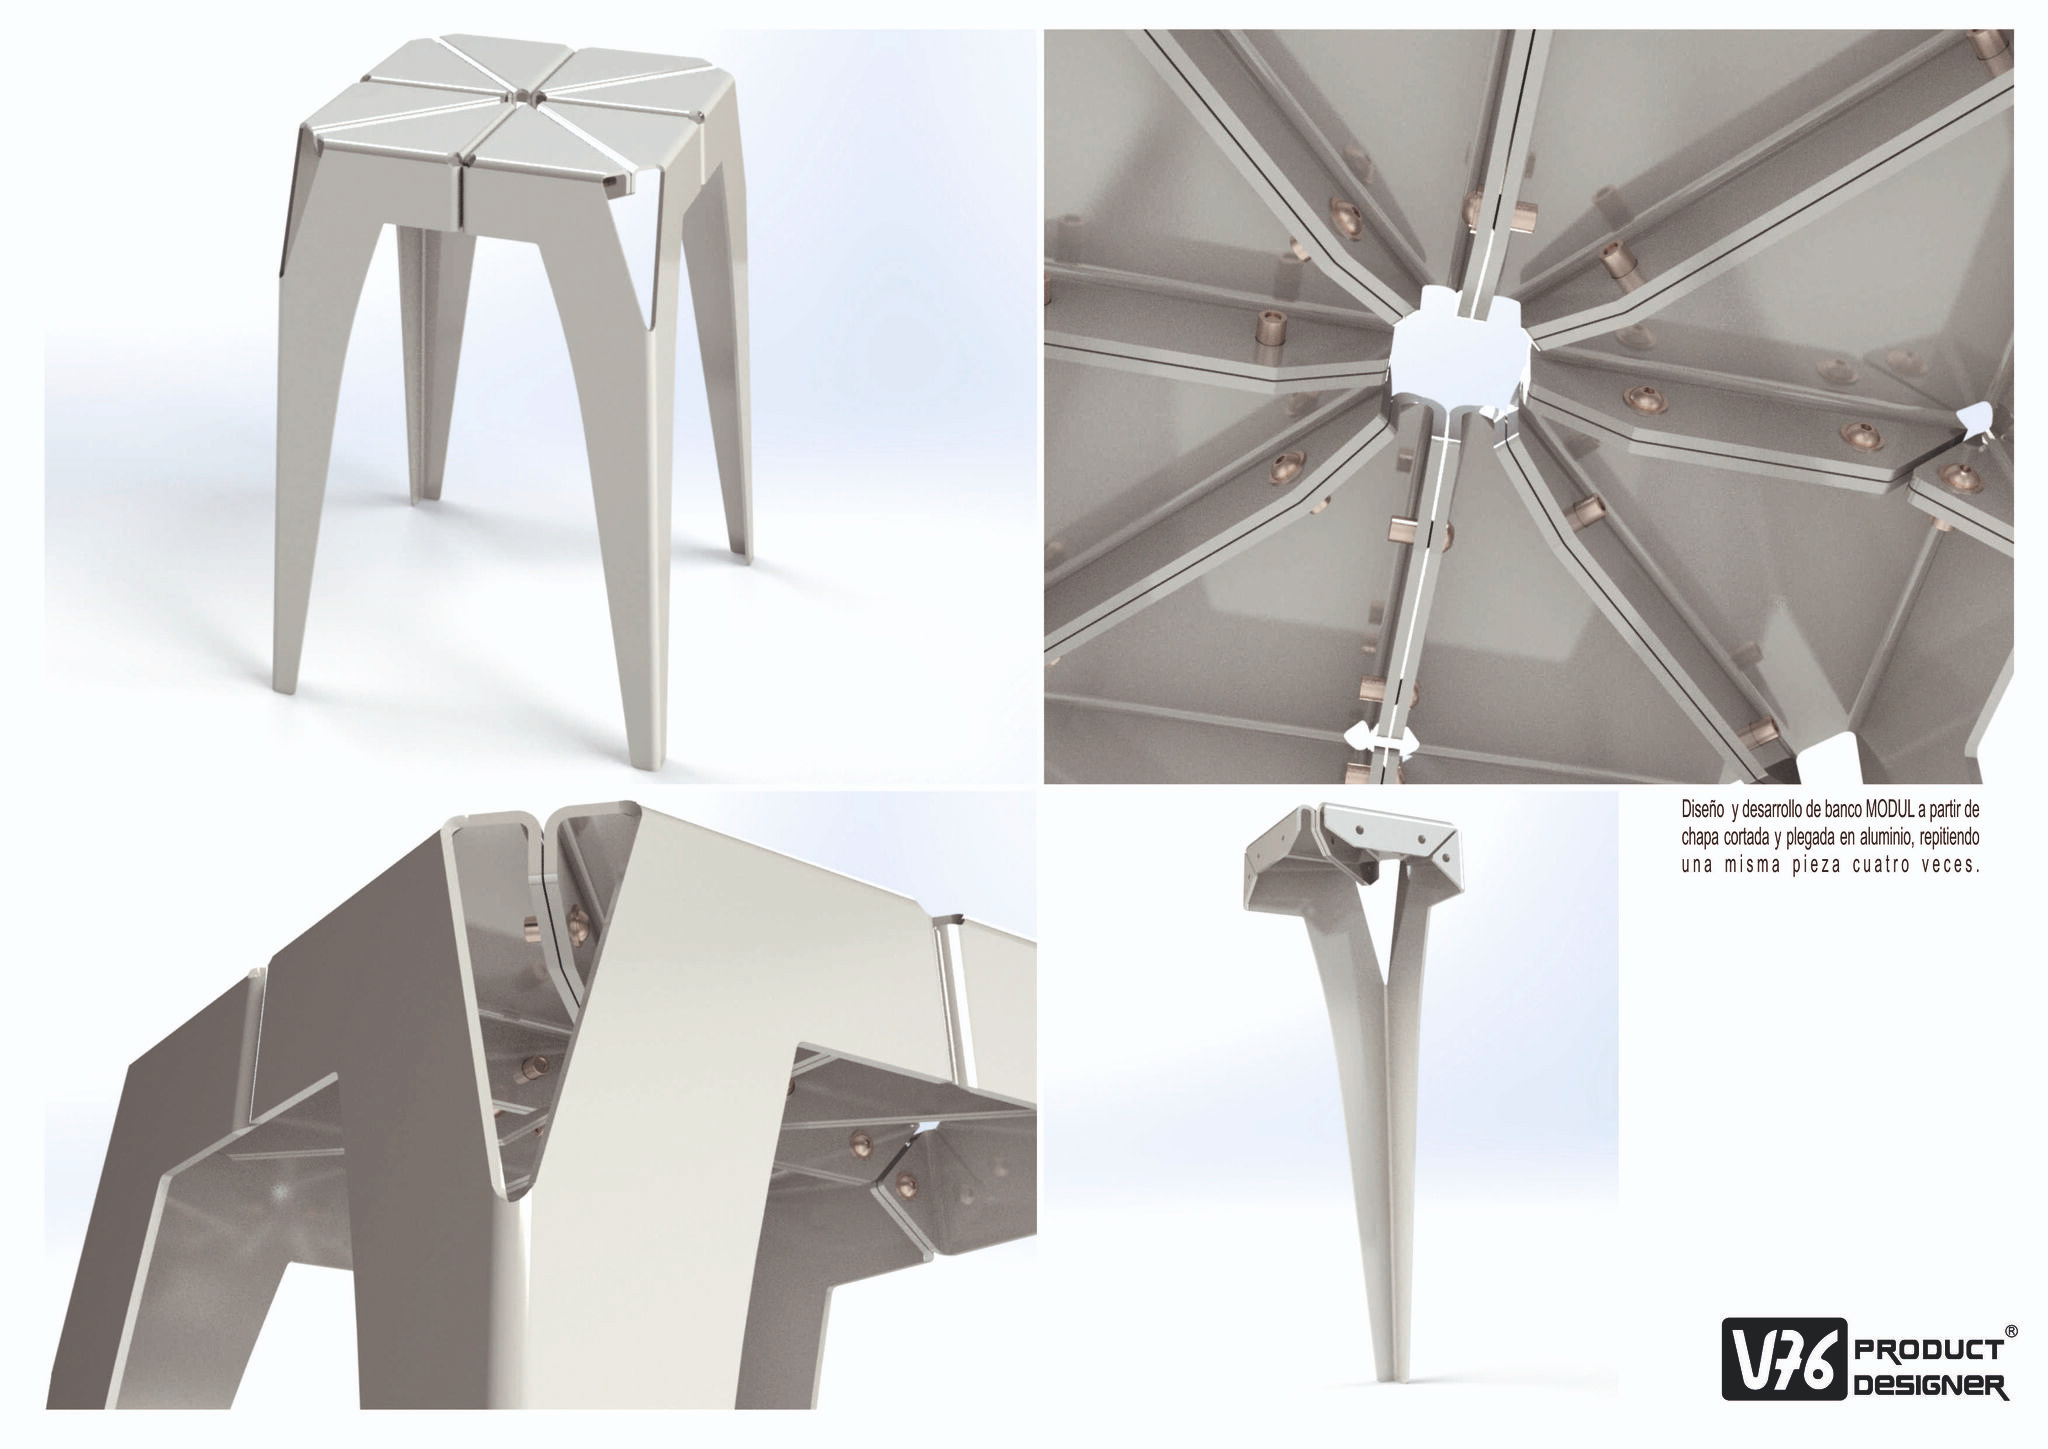 ¡Diseño único y funcional: Presentamos el banco MODUL de V76 PRODUCT DESIGNER!